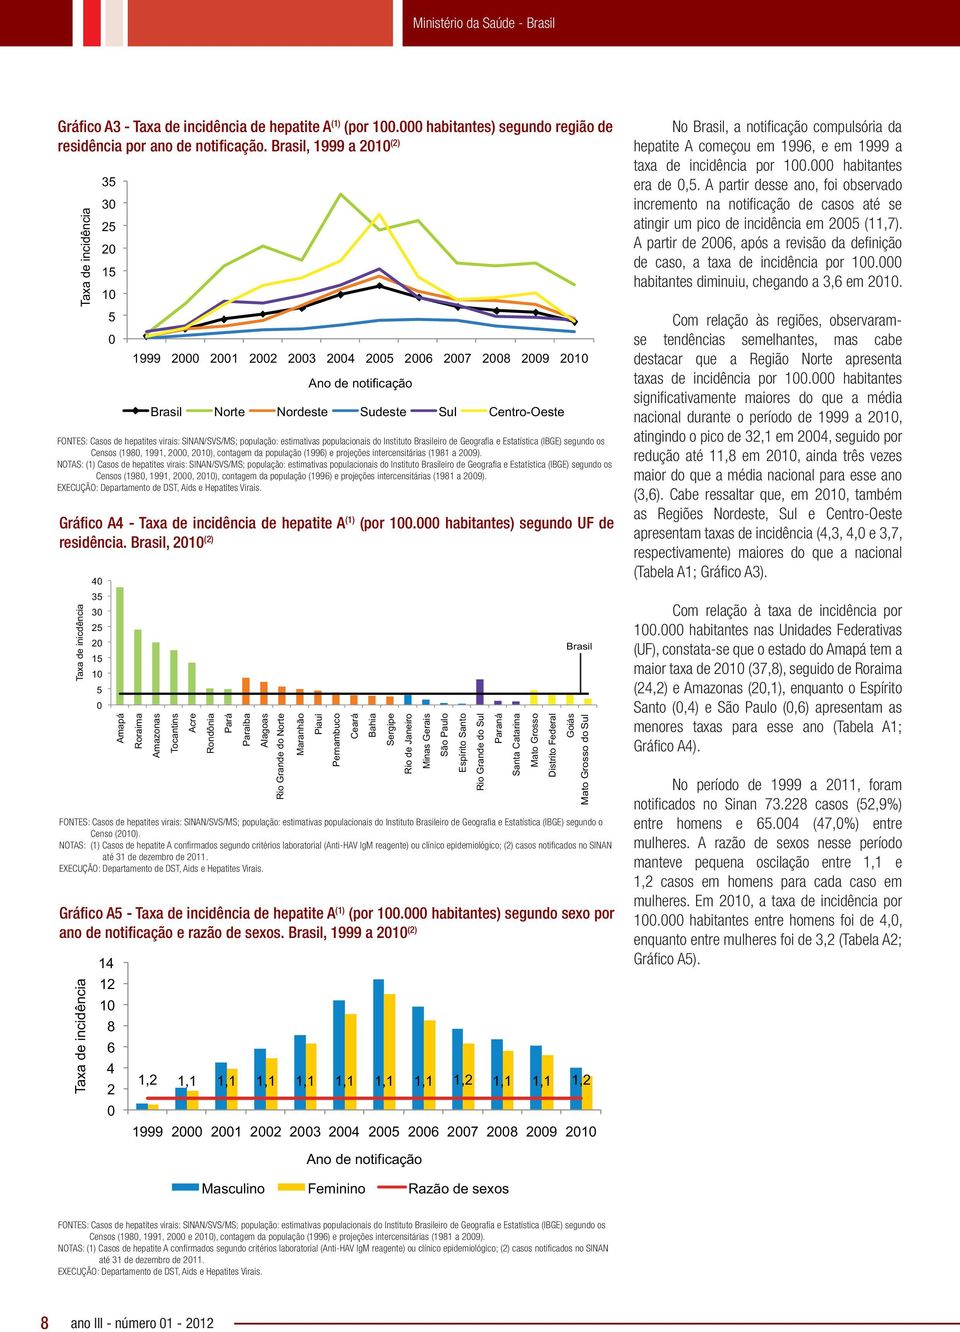 Casos de hepatites virais: SINAN/SVS/MS; população: estimativas populacionais do Instituto Brasileiro de Geografia e Estatística (IBGE) segundo os Censos (1980, 1991, 2000, 2010), contagem da